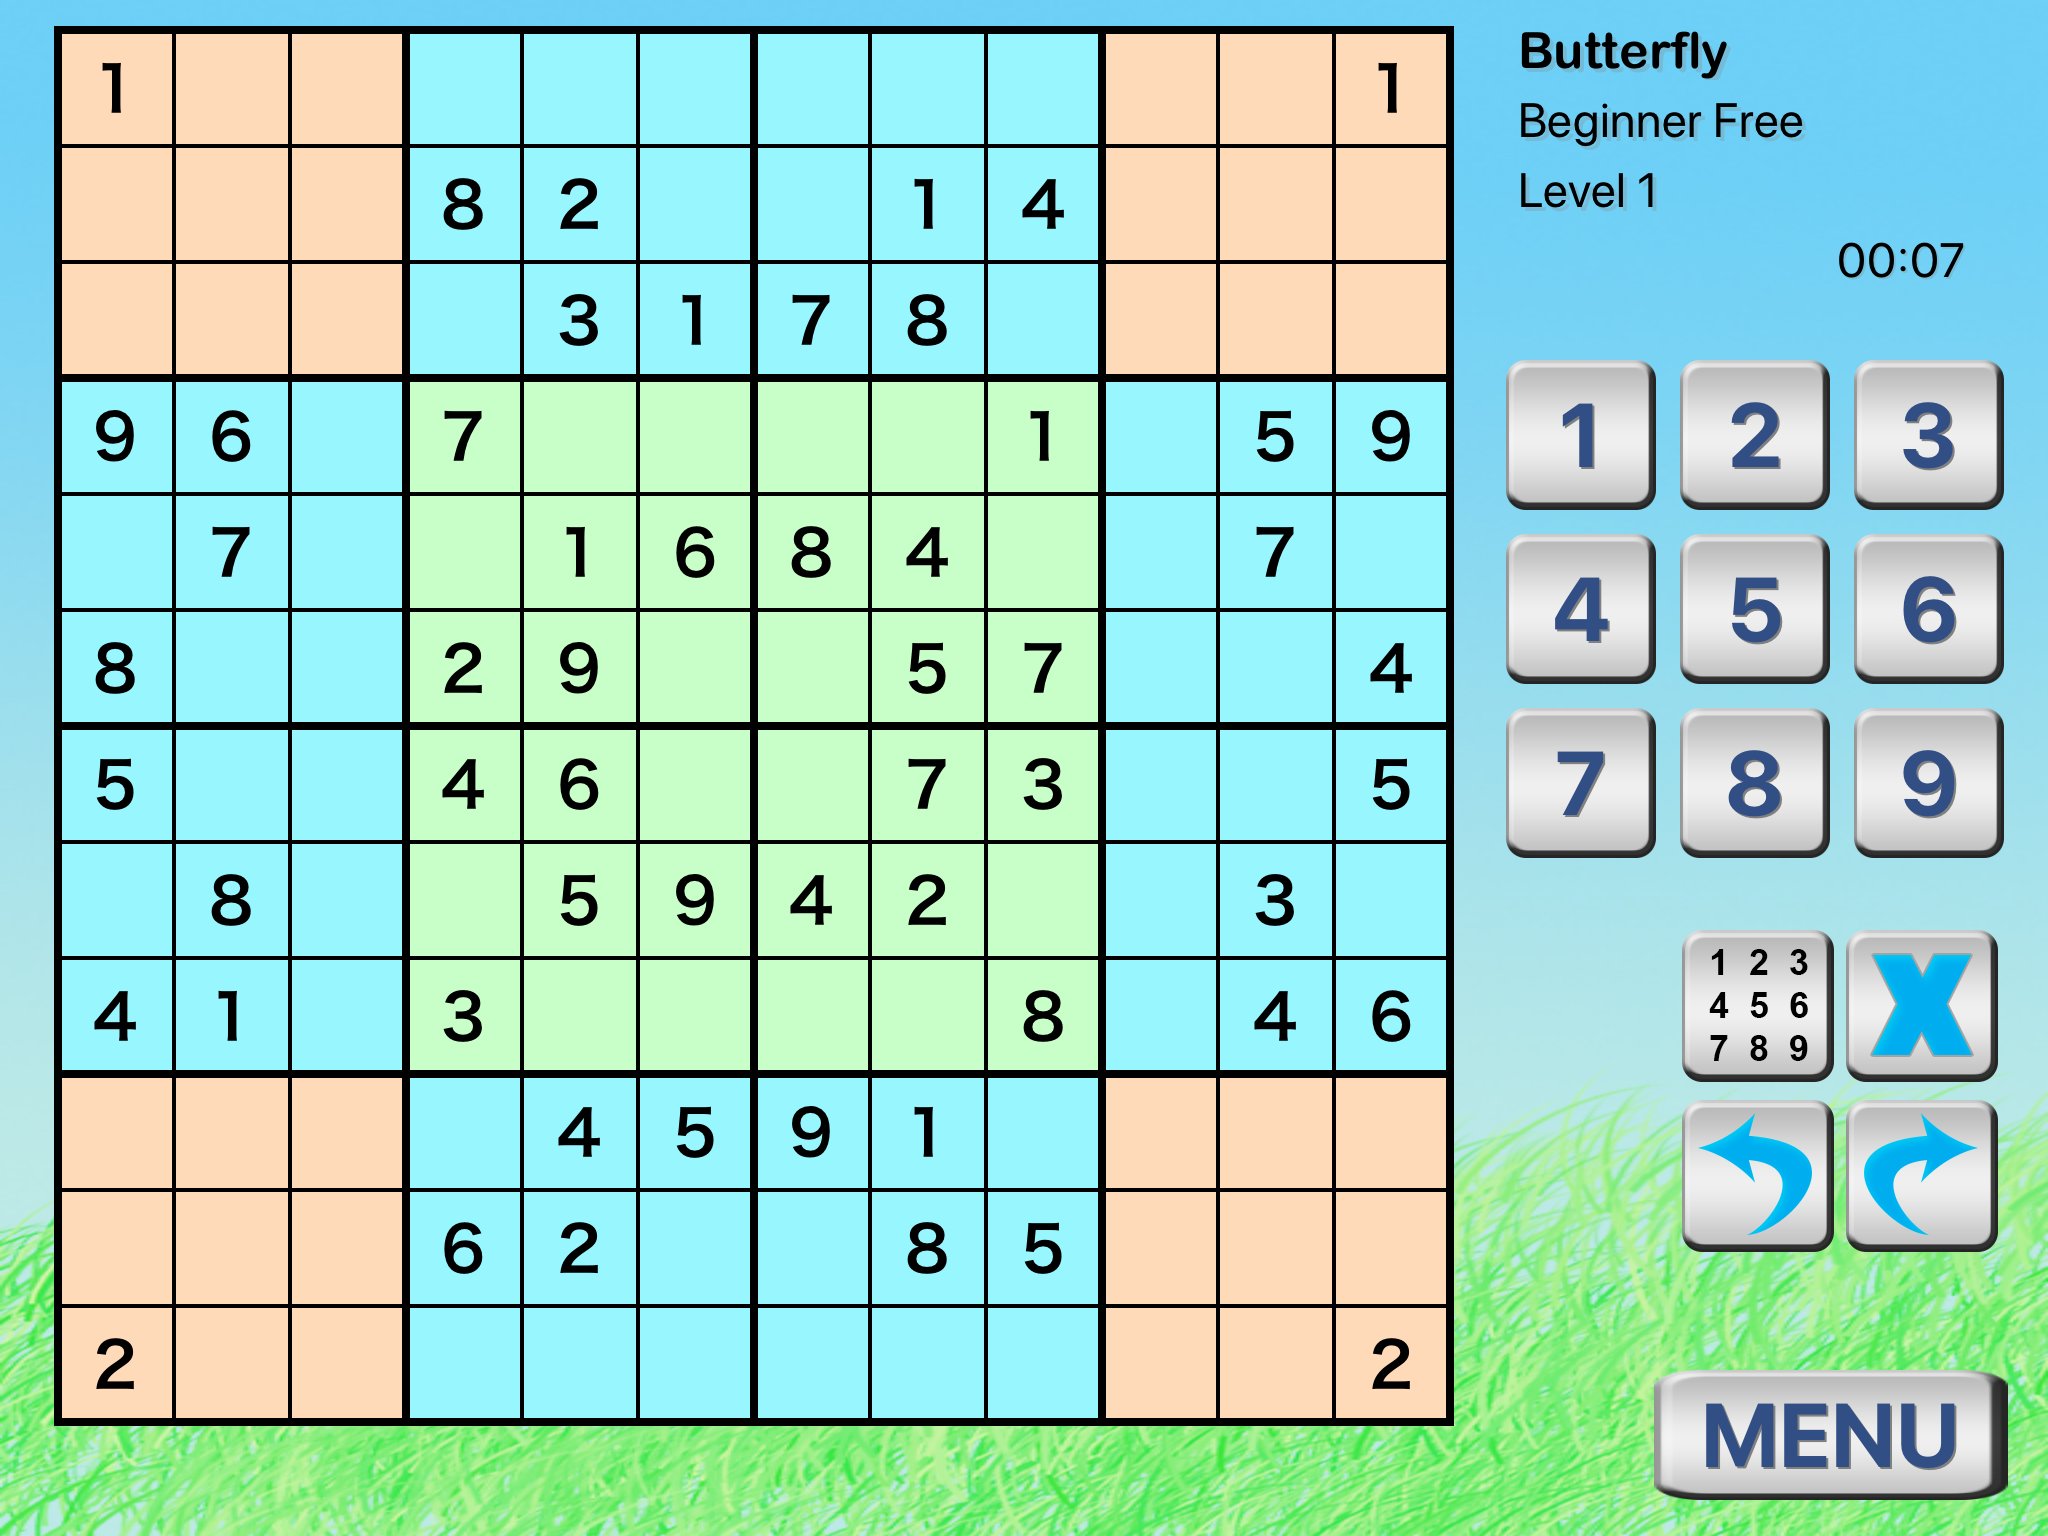 Butterfly Sudoku - Difícil 